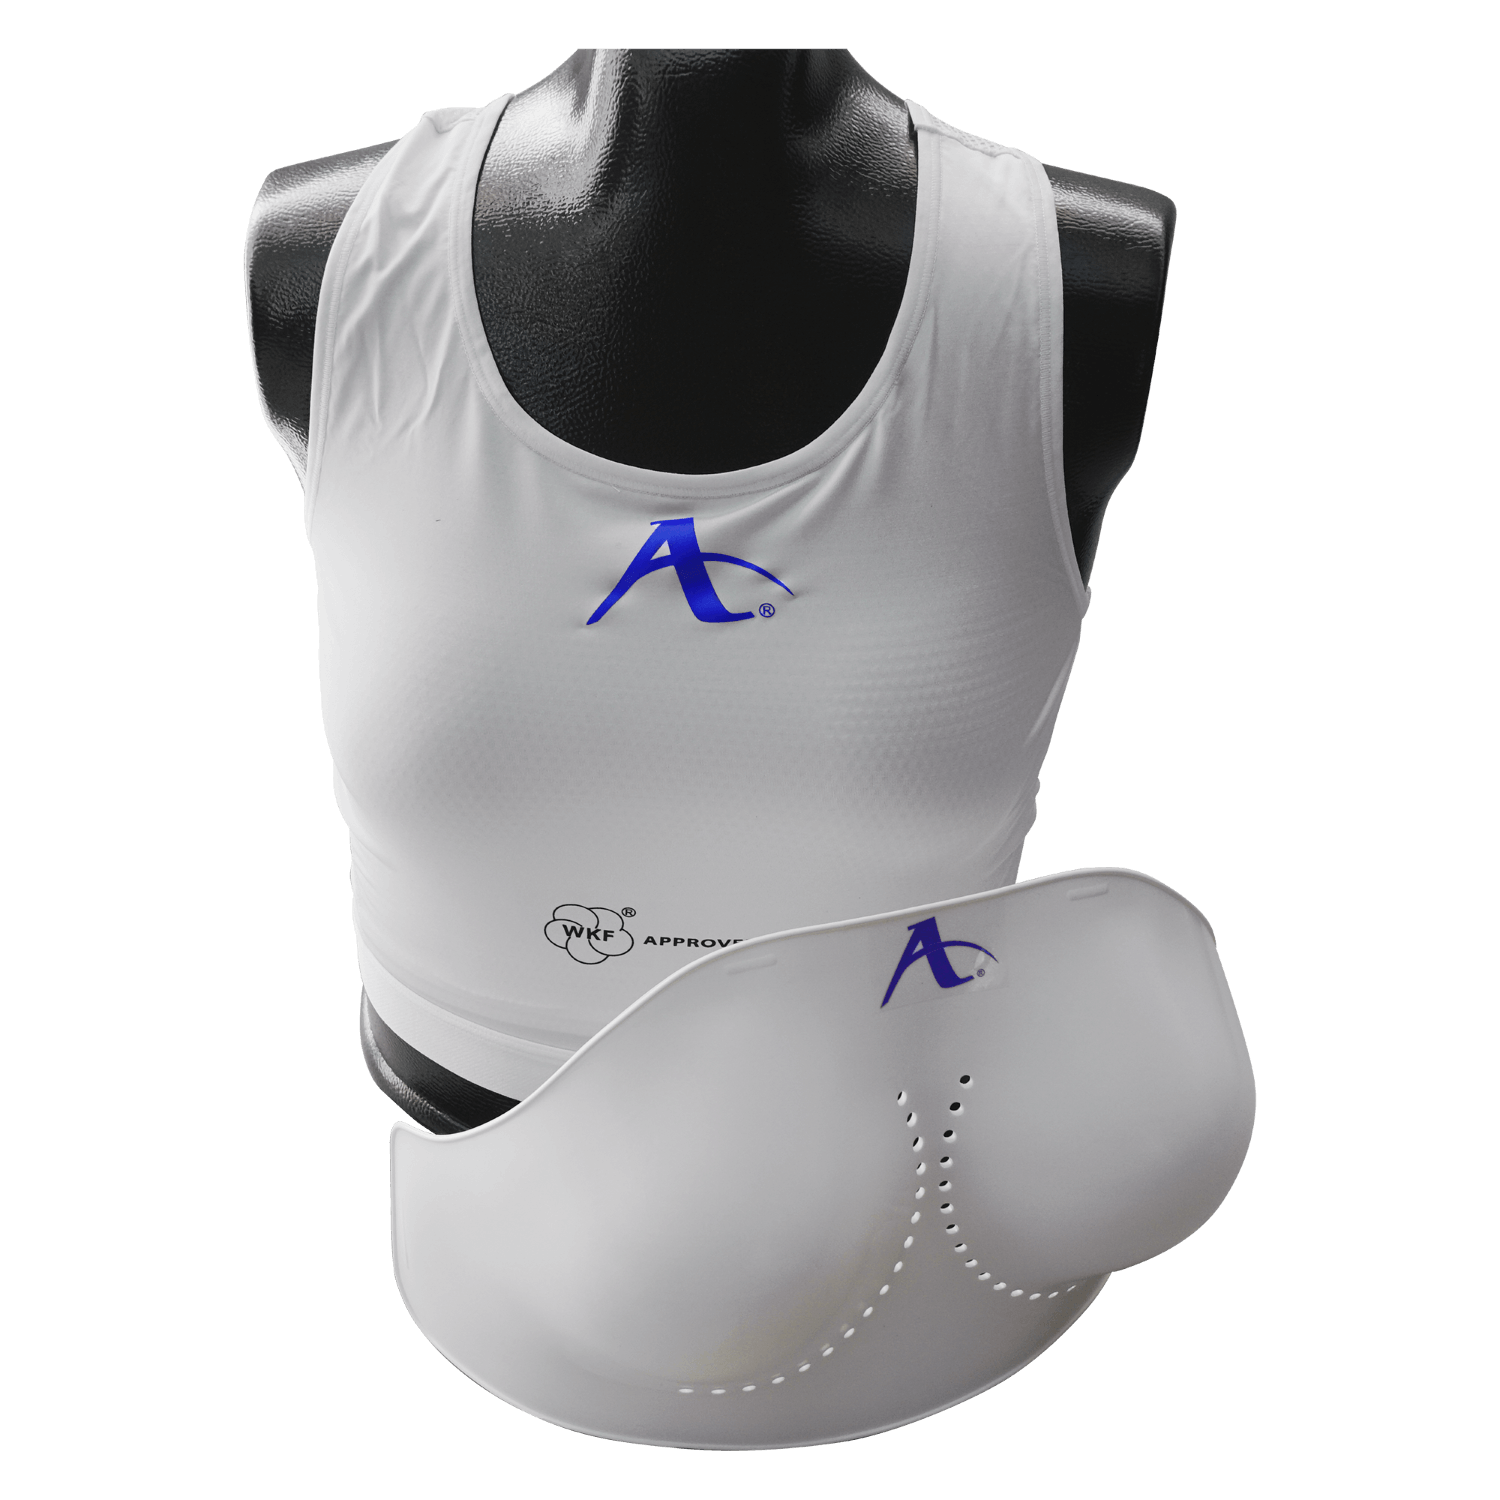 Arawaza Chile - Protector de seno con mica WKF Approved - Protectores femeninos de t贸rax para karate